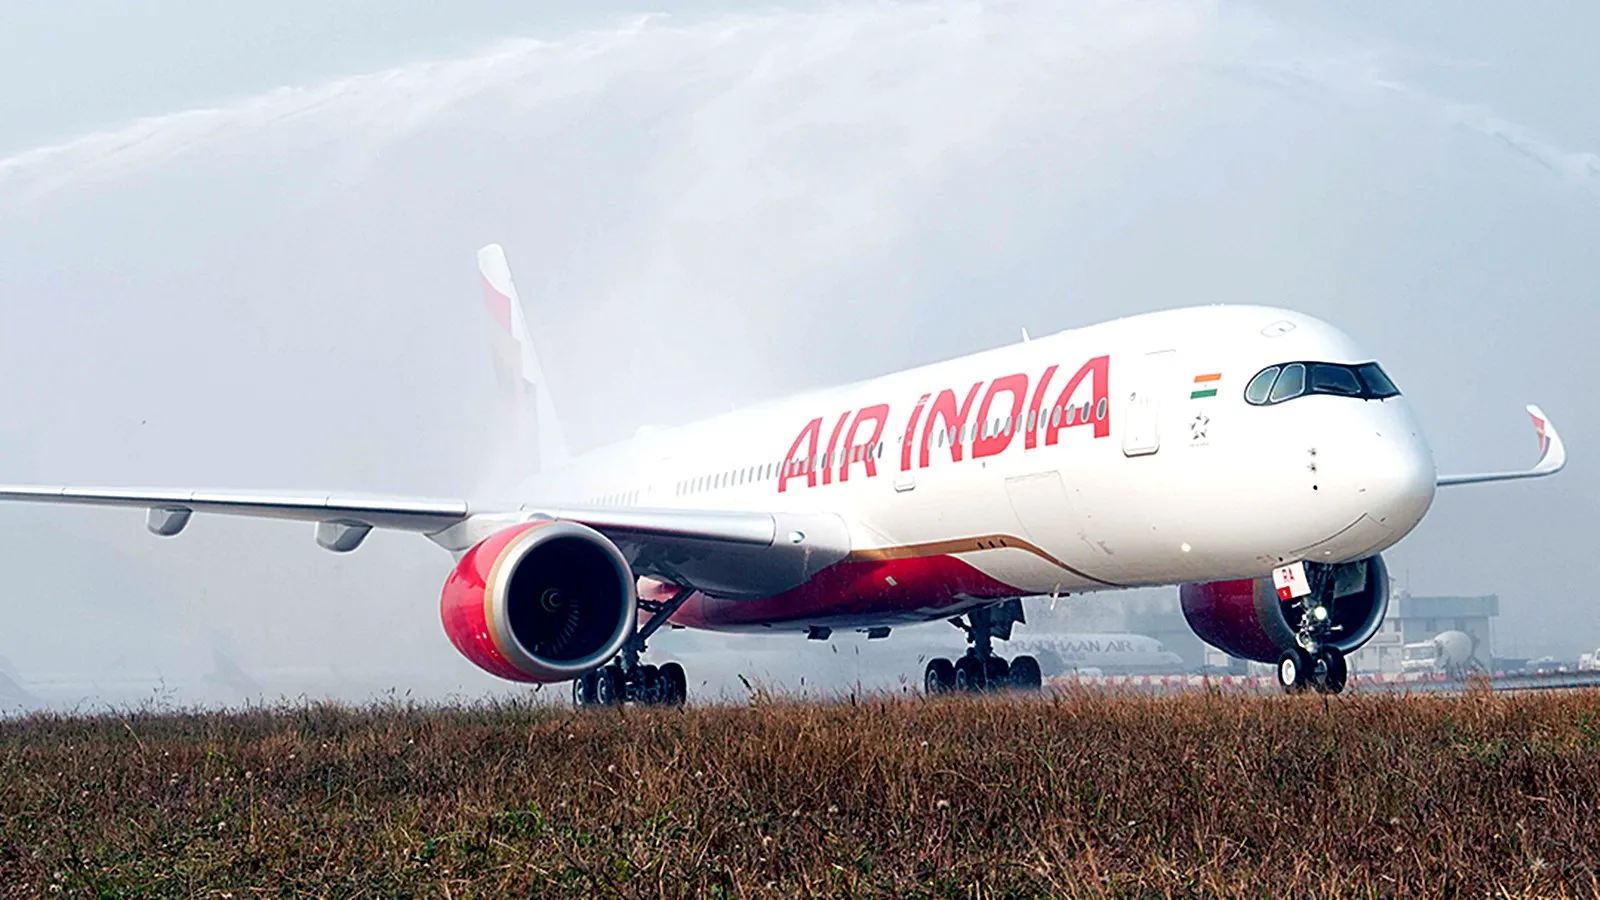 Air India, Yeni Airbus A350-900 ile Londra-Heathrow'a Uzun Mesafe Uçuşlarına Başlıyor